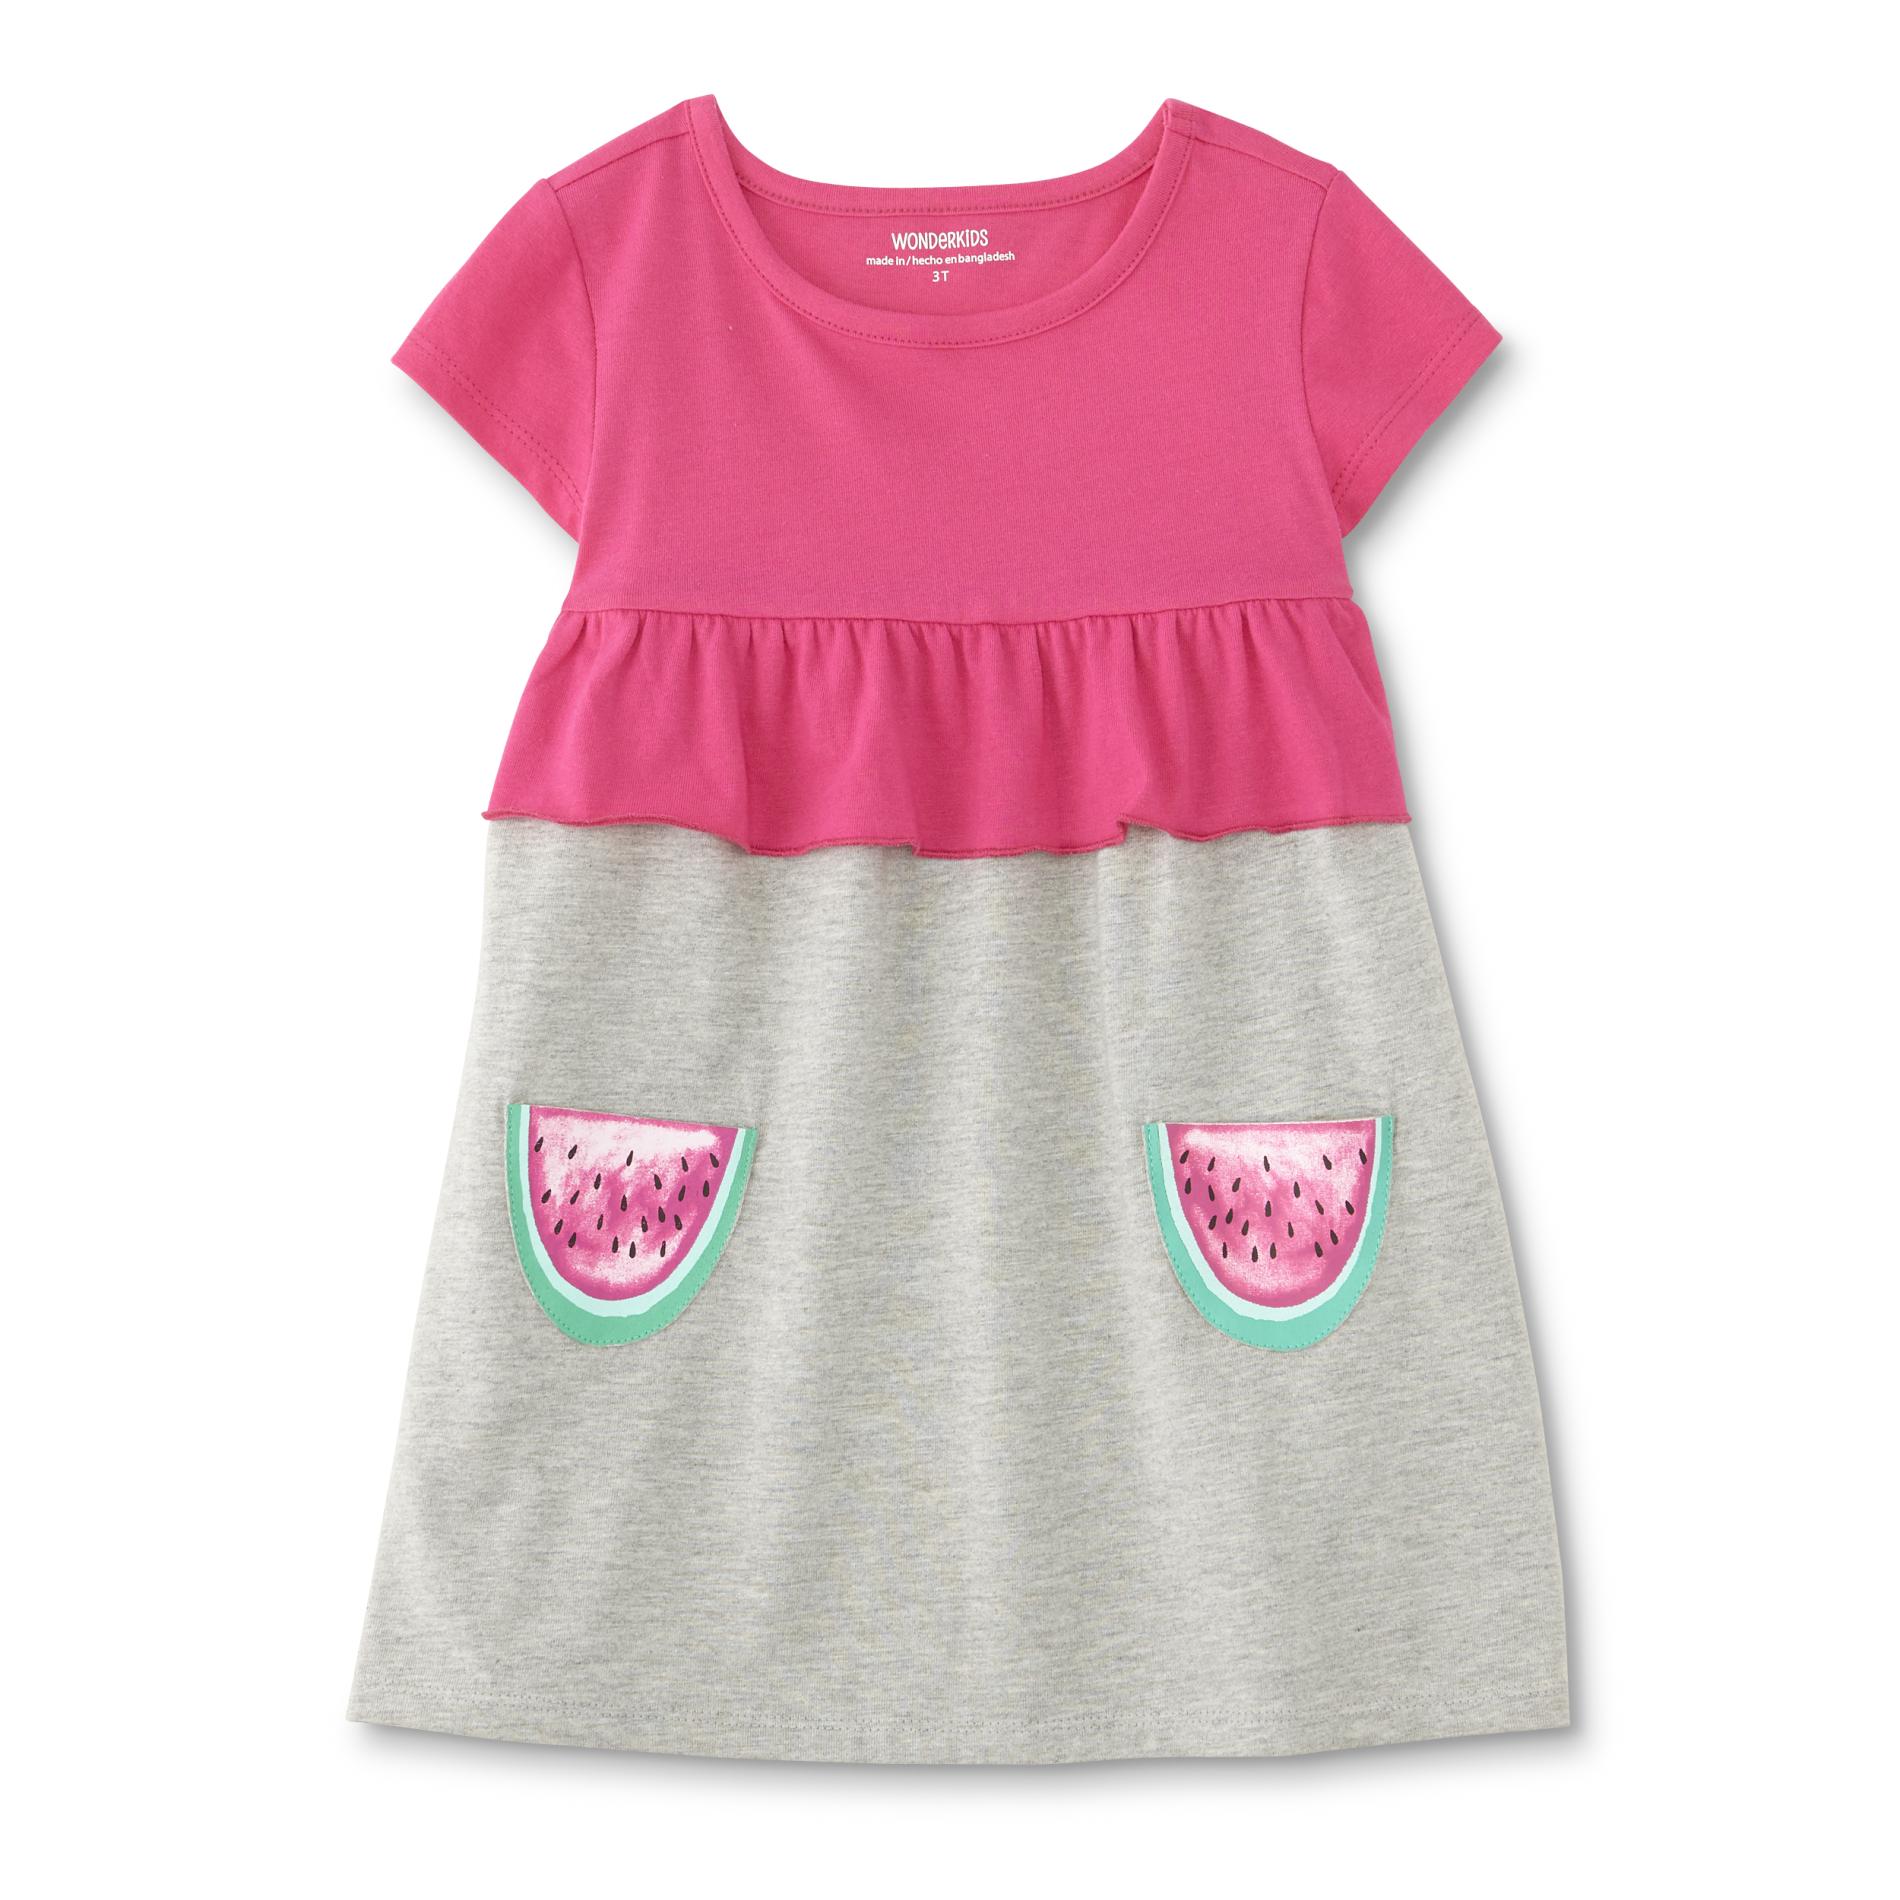 Toughskins Infant & Toddler Girls' T-Shirt Dress - Watermelon